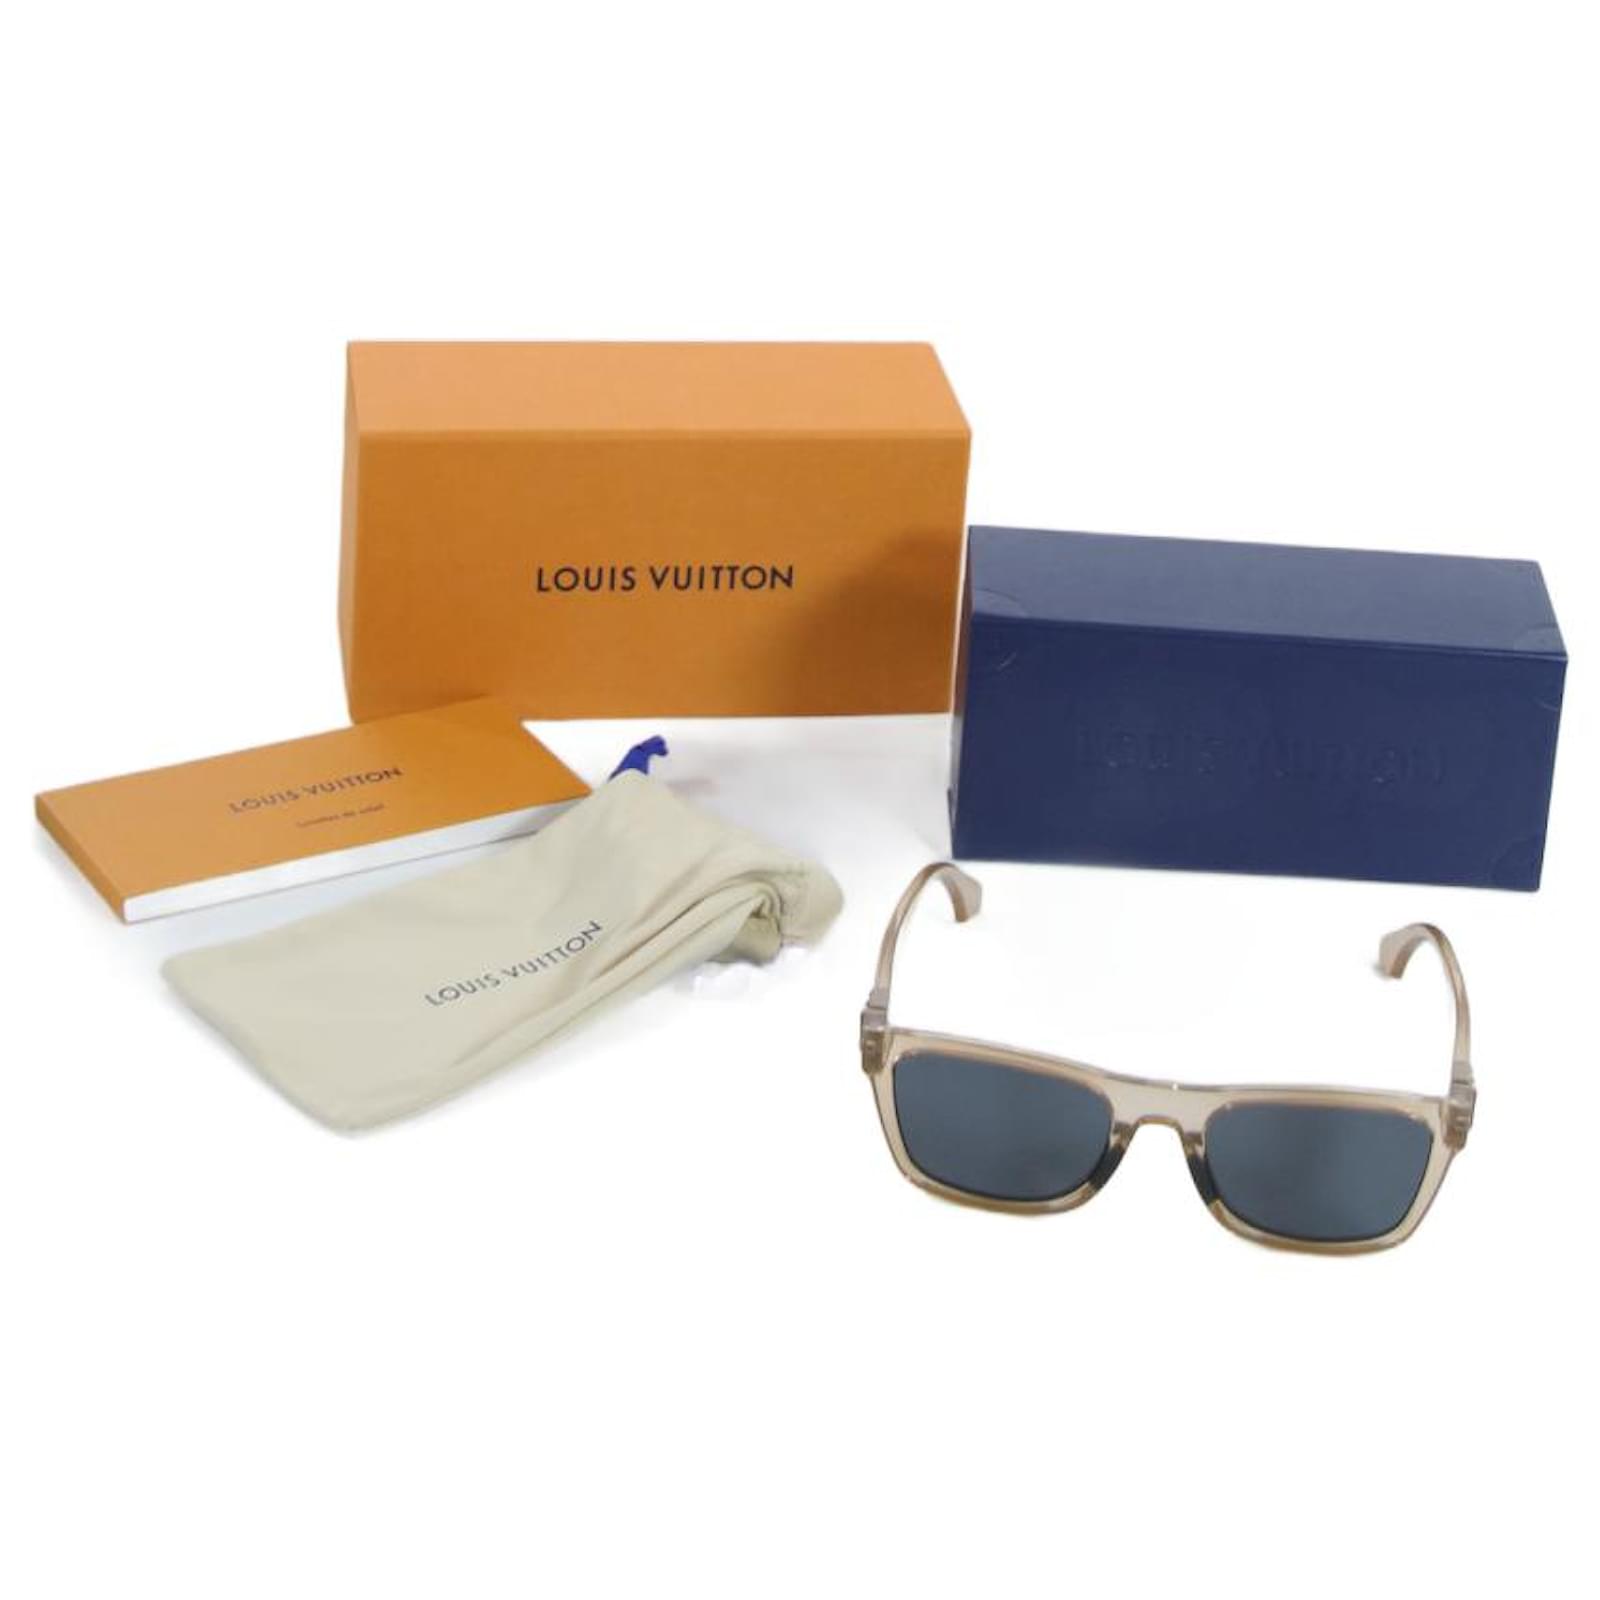 Sunglasses, Louis Vuitton Original Sunglasses